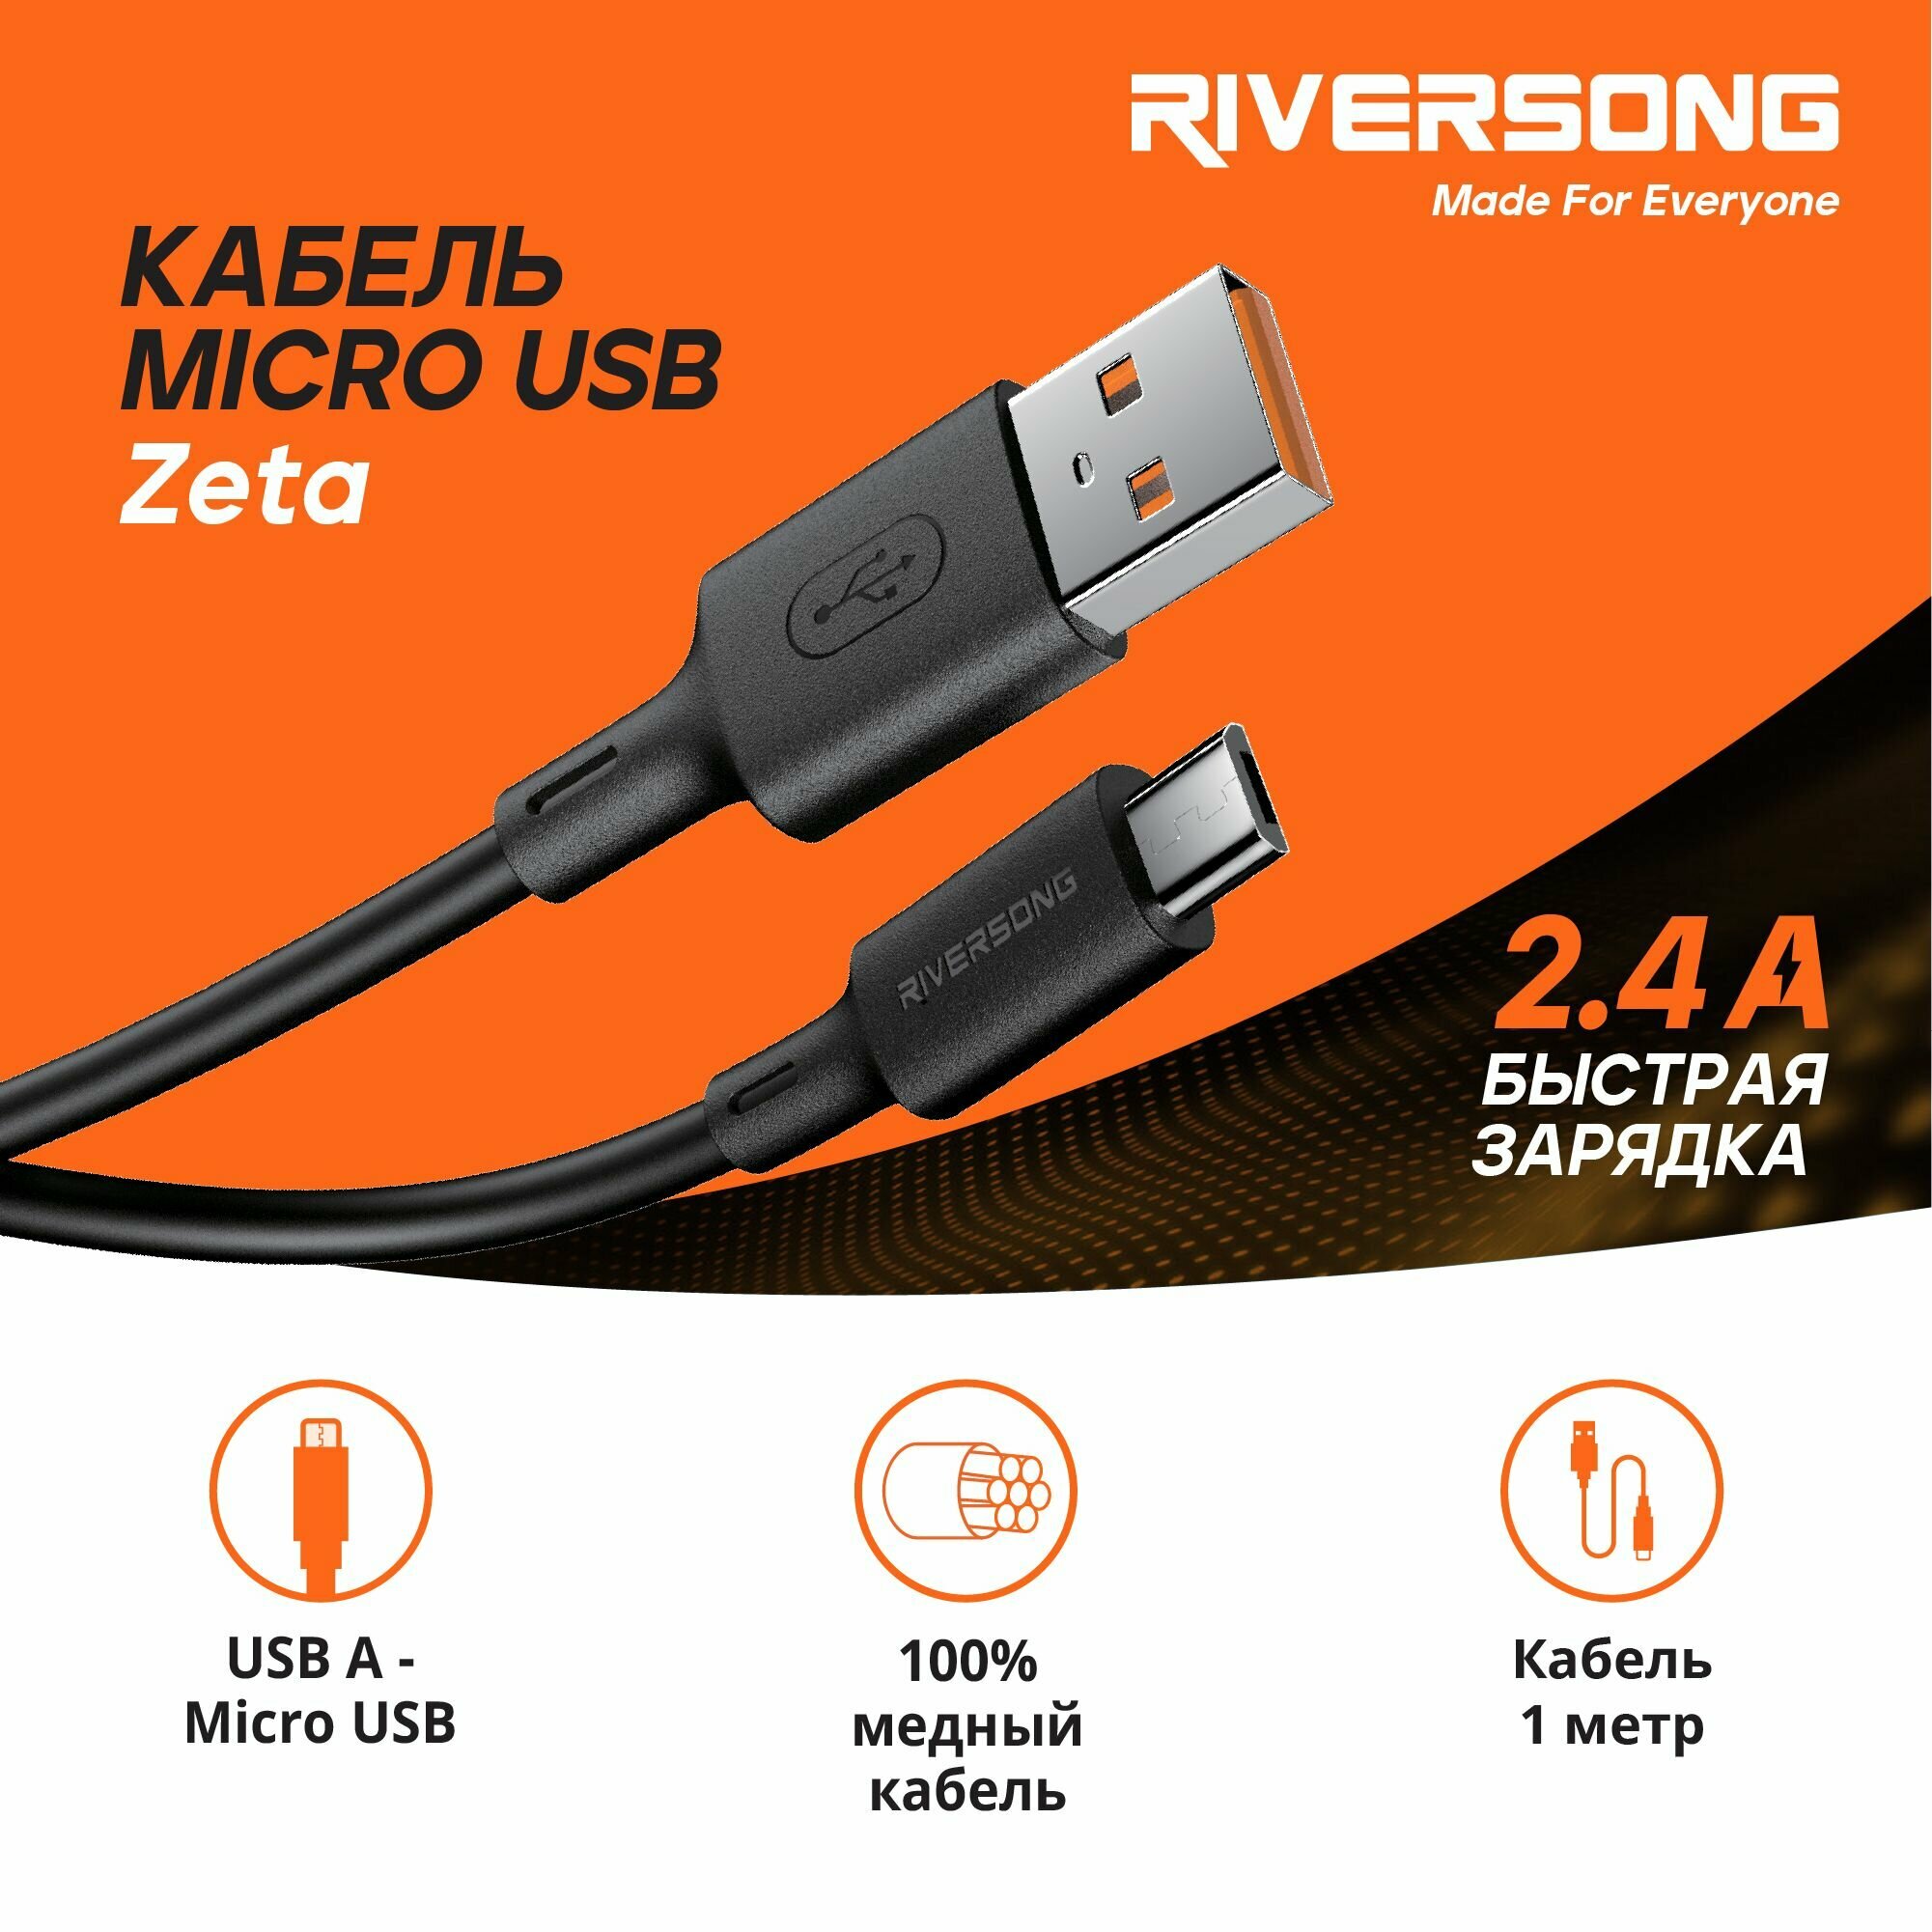 Кабель для телефона / Micro USB / 1 метр / Быстрая зарядка для телефона / Провод USB Micro / Riversong Zeta 2.4А USB 2.0 цвет черный